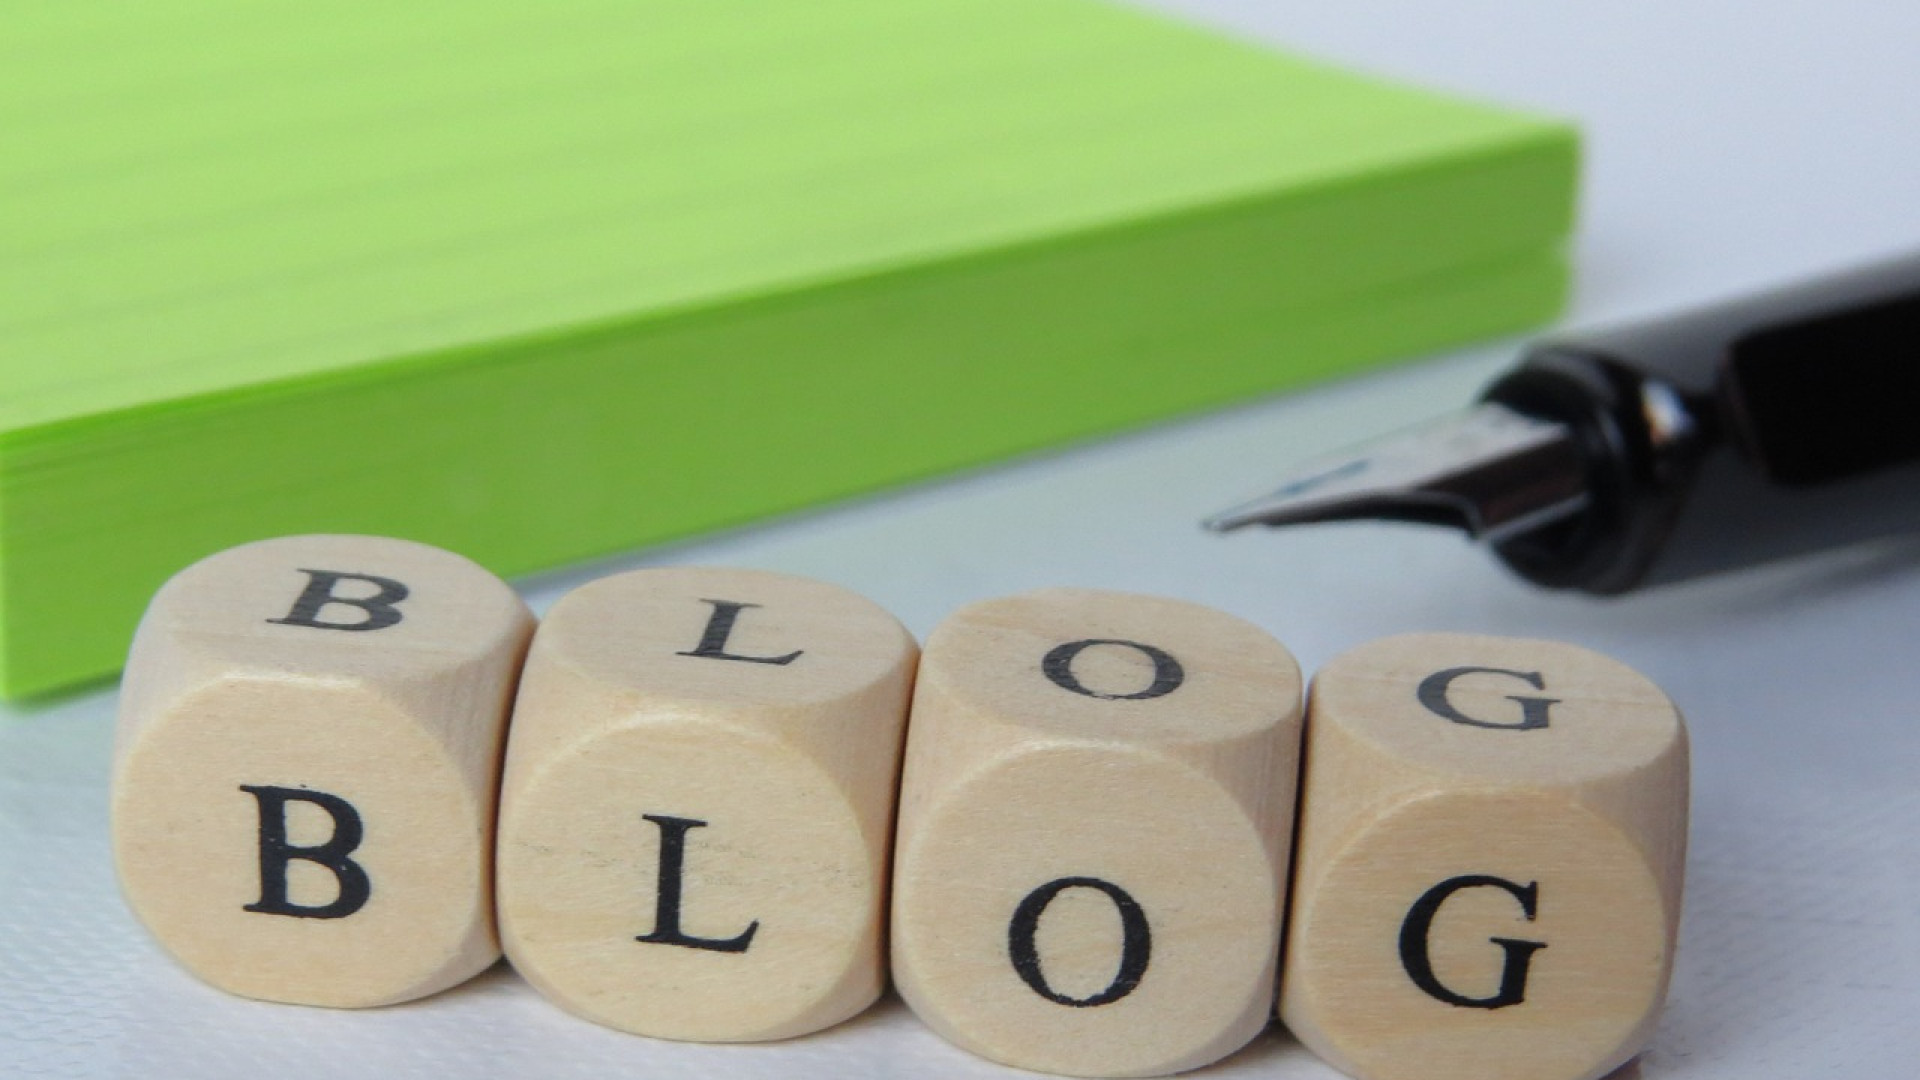 Blog business : toutes les informations utiles au quotidien